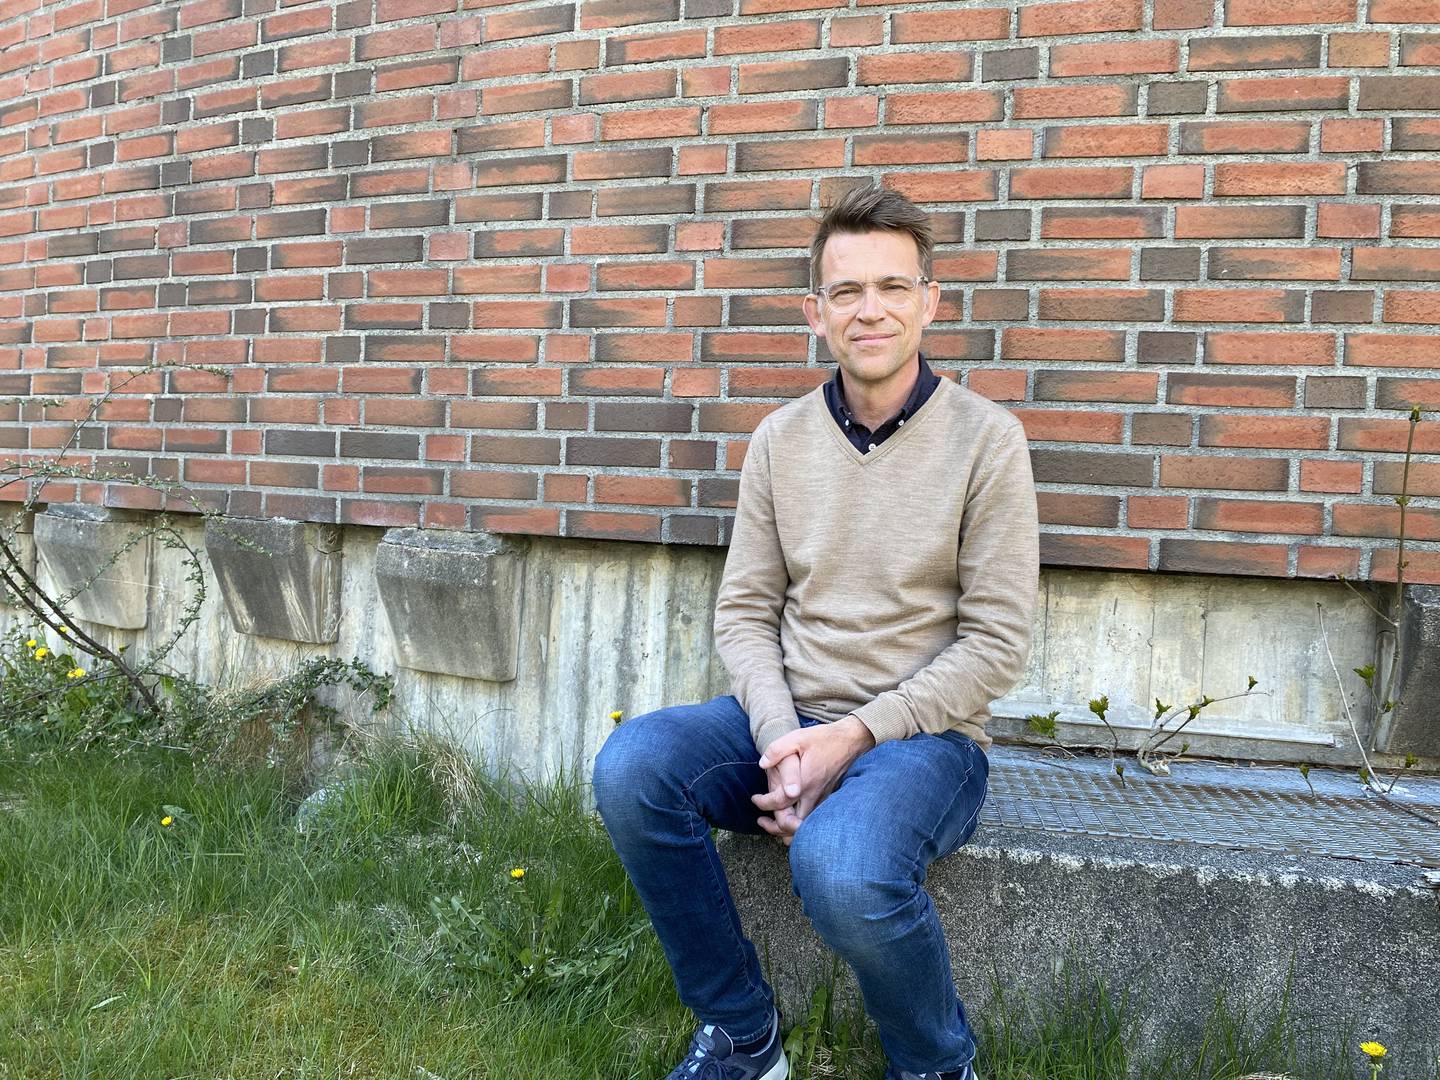 Hovudpastor i Bergen frikirke, Tor Erling Fagermoen. Leiar av dialogutvalet i Frikyrkja (Frikirken).